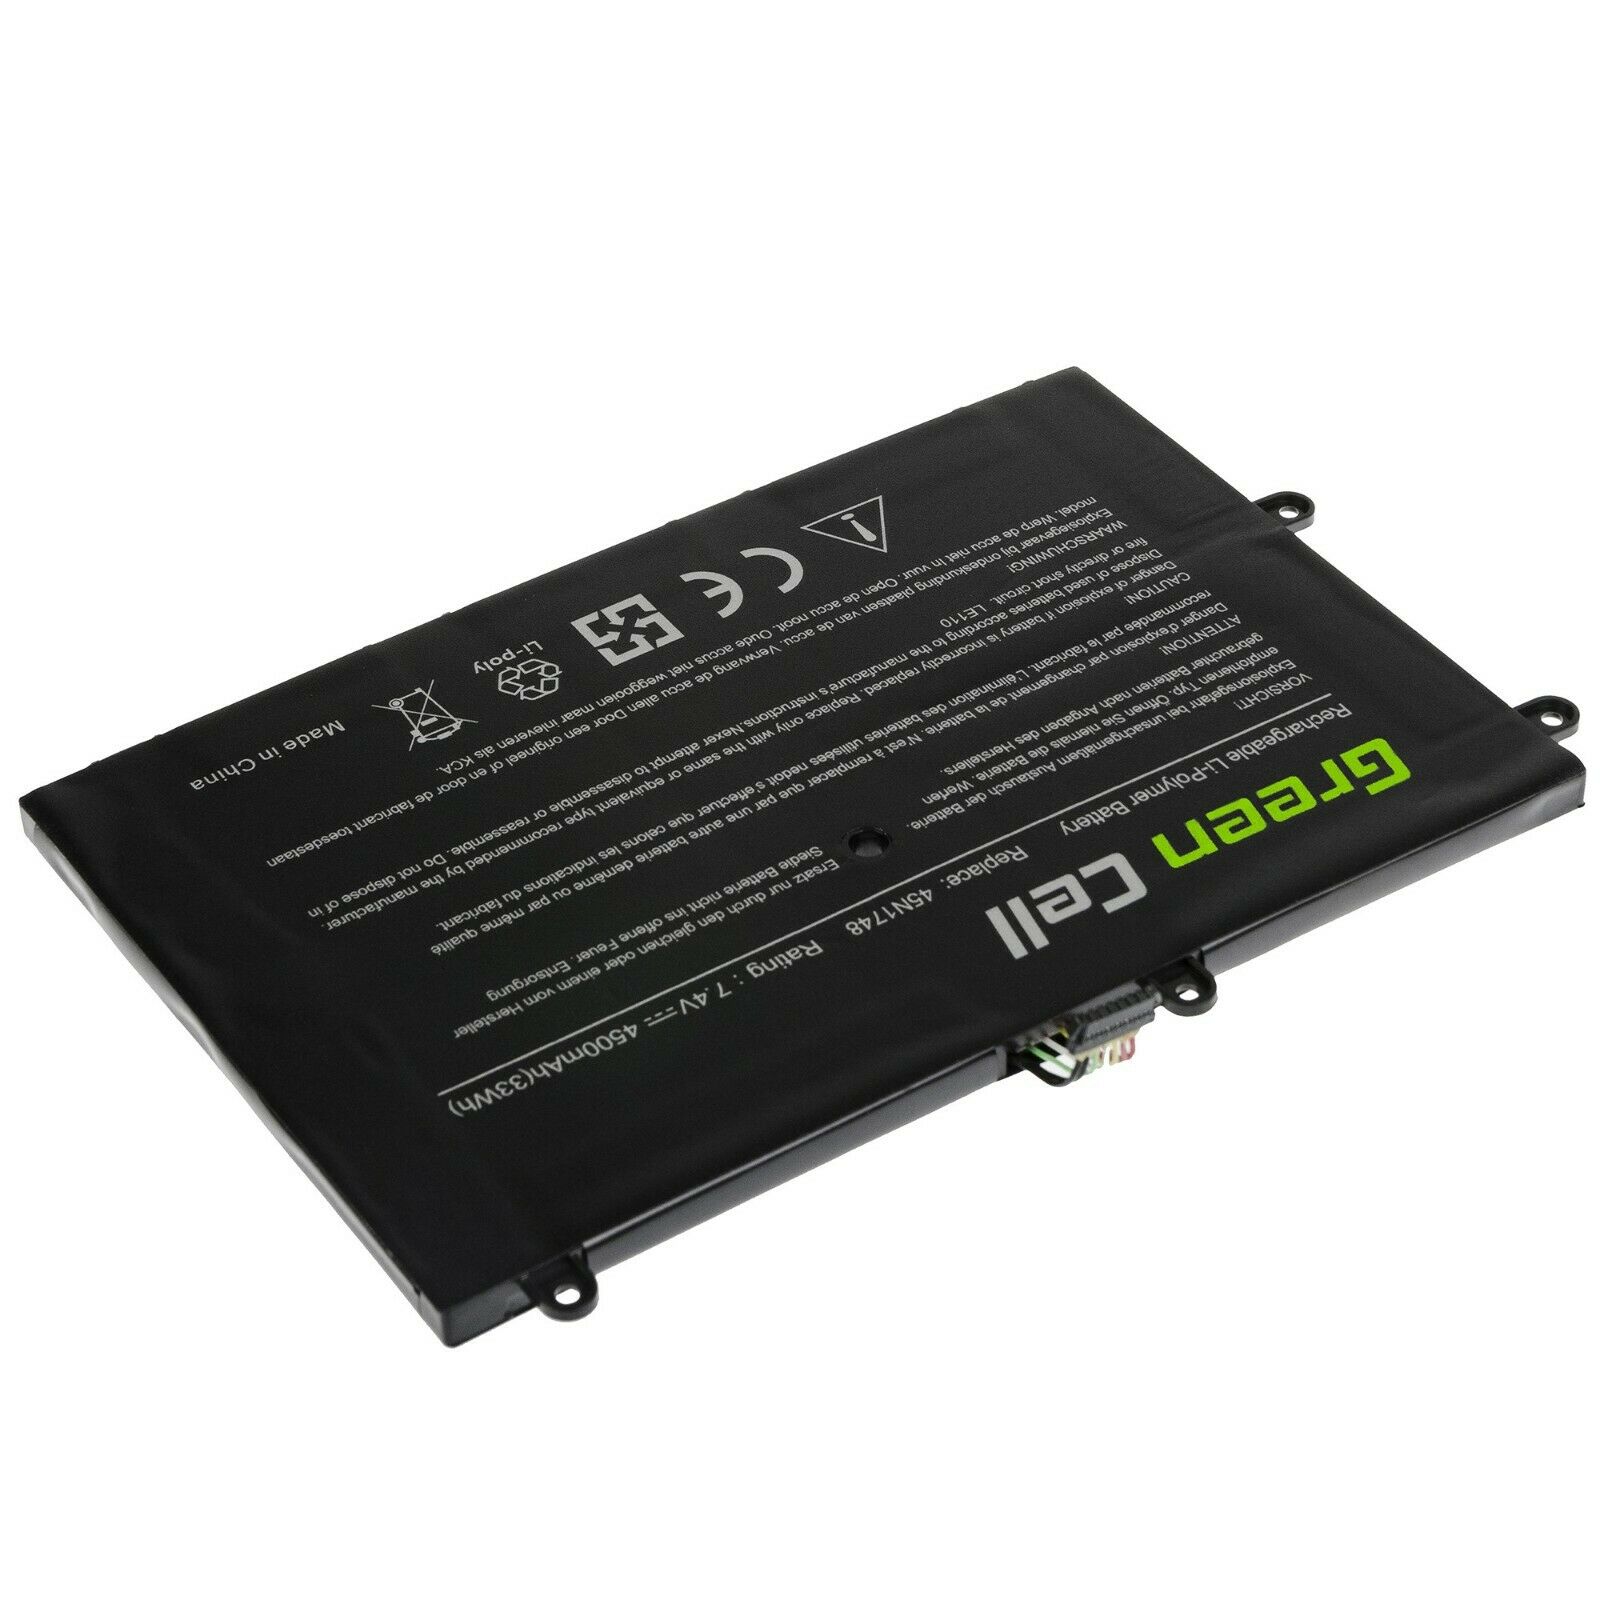 μπαταρία για Lenovo ThinkPad 11e (20D9/20DA), 45N1748, 45N1749, 45N1750, 45N1751 συμβιβάσιμος - Πατήστε στην εικόνα για να κλείσει